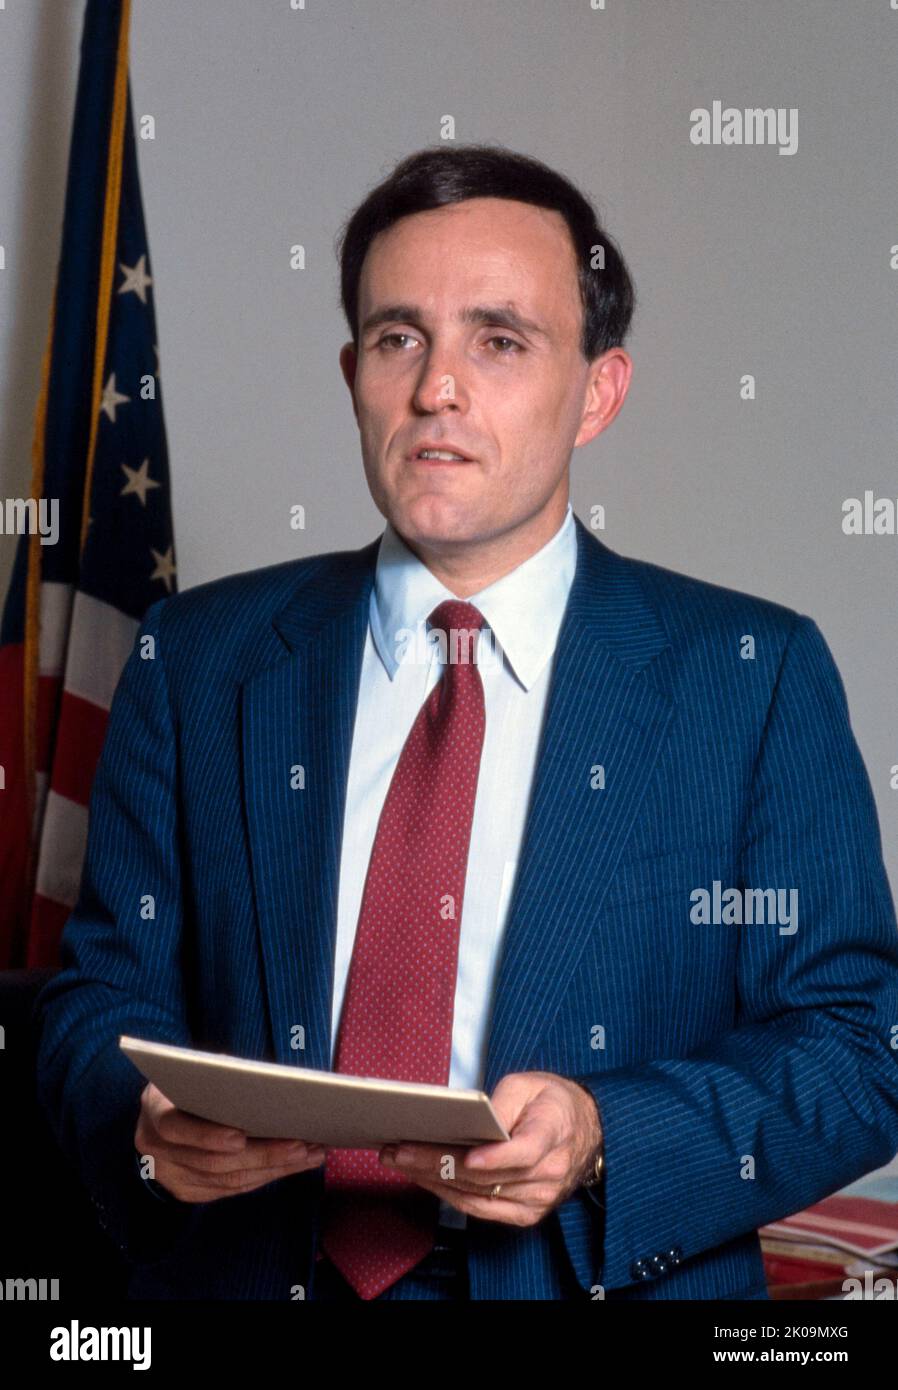 Rudolph Giuliani (nato nel 1944) politico e avvocato americano che è stato il 107th sindaco di New York dal 1994 al 2001. In precedenza ha ricoperto il ruolo di procuratore generale associato degli Stati Uniti dal 1981 al 1983 e di procuratore statunitense per il distretto meridionale di New York dal 1983 al 1989. Foto Stock